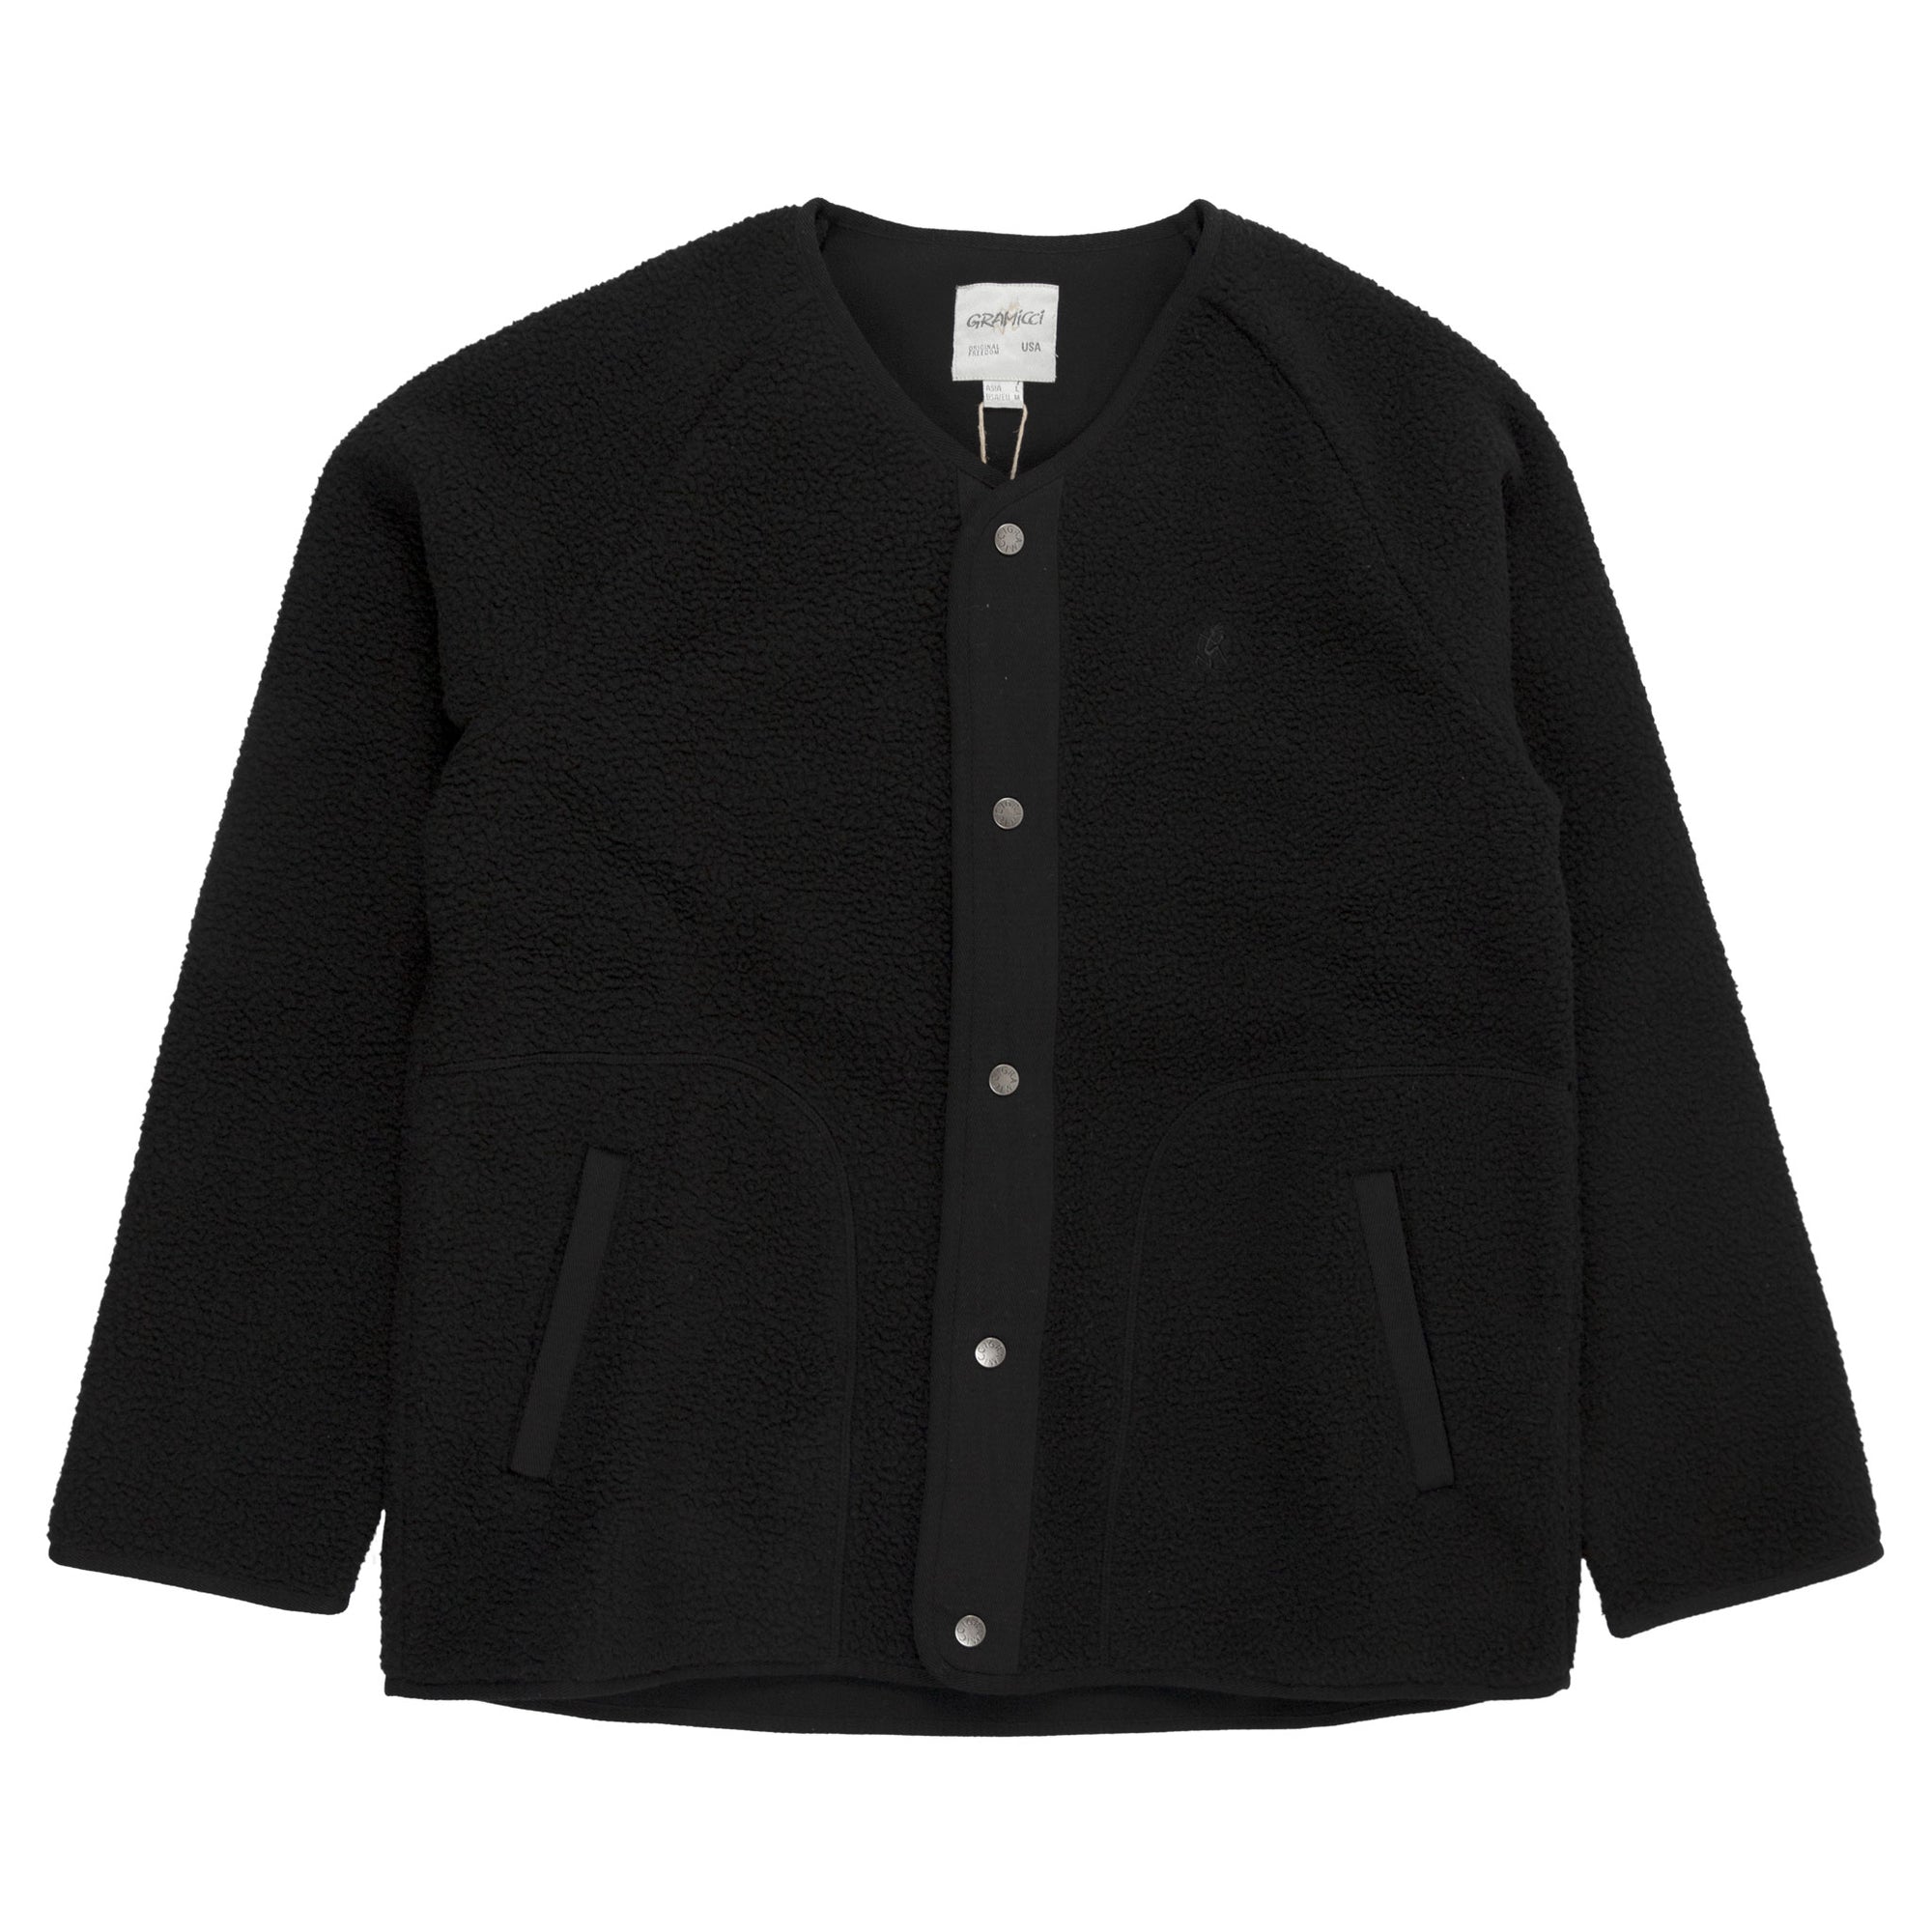 Gramicci Boa Fleece Jacket in Black outer wear warm front